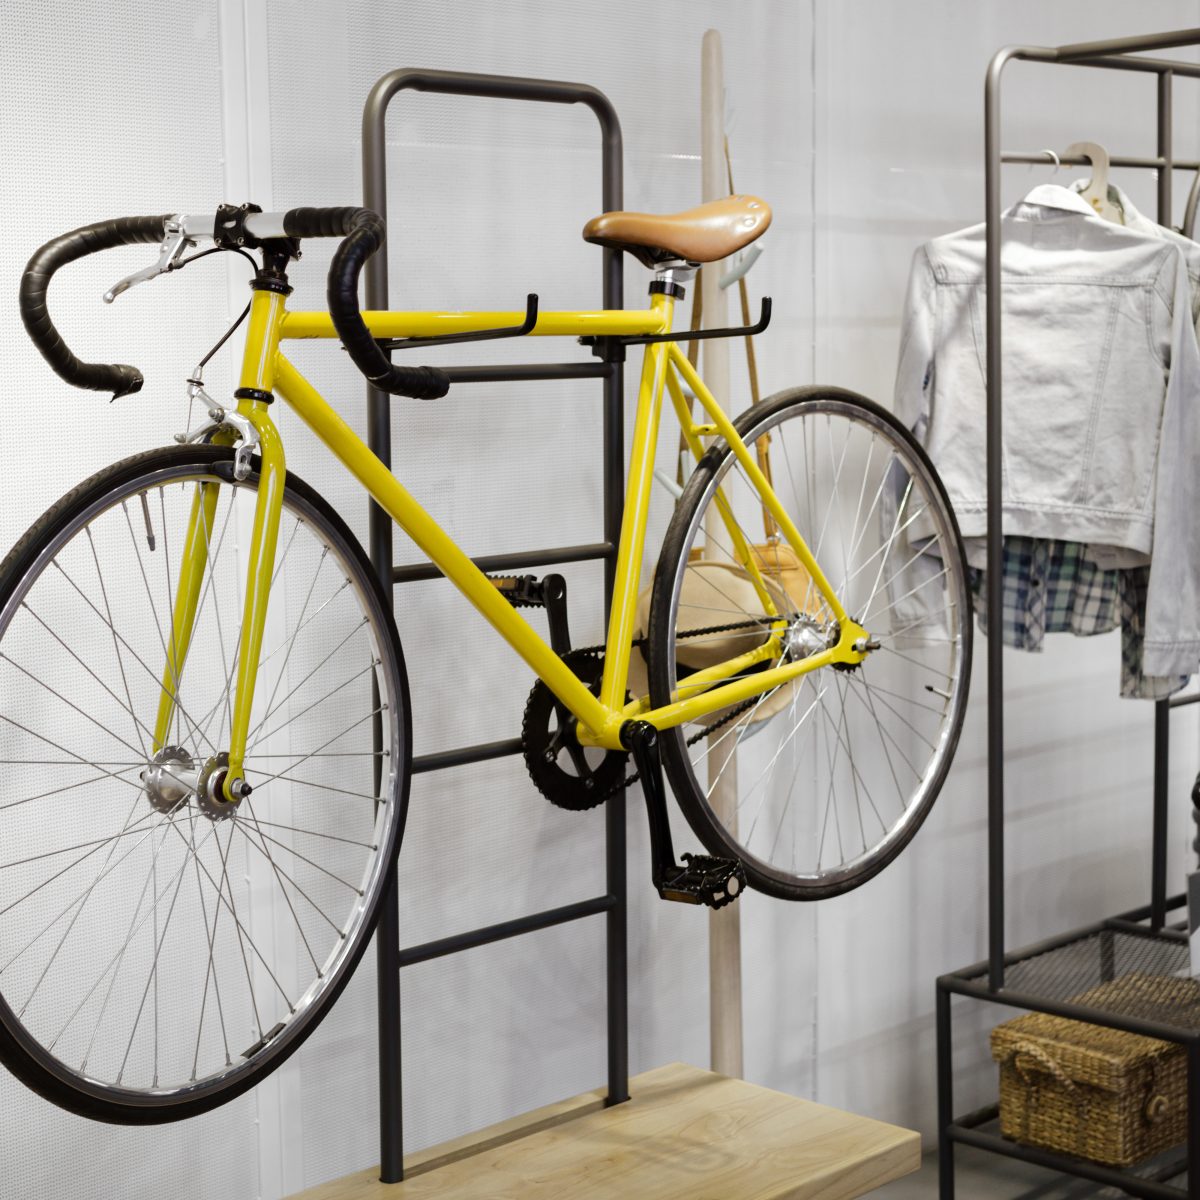 Bike Hooks for Garage Wall Vertical, 6 Bike Storage Rack Space